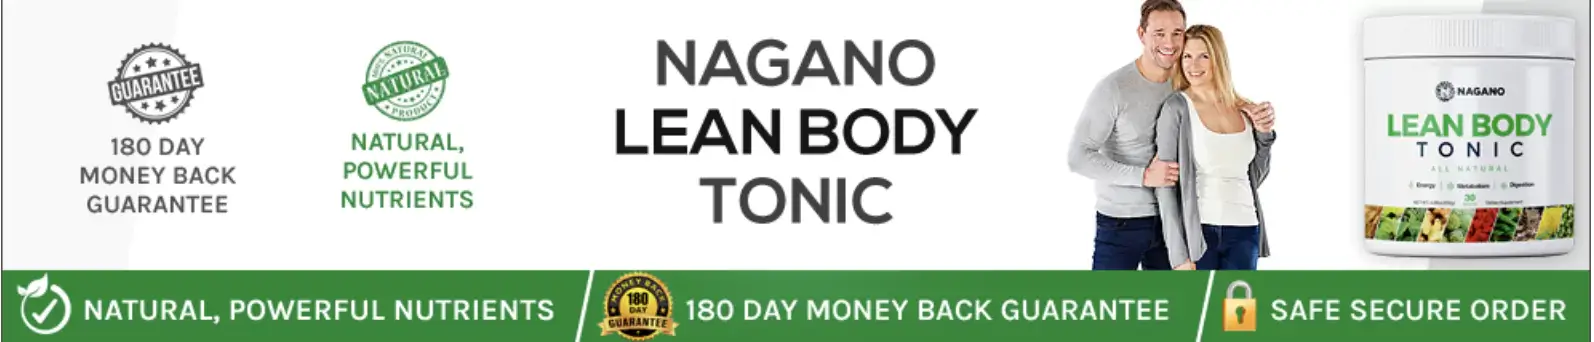 nagano lean body tonic banner